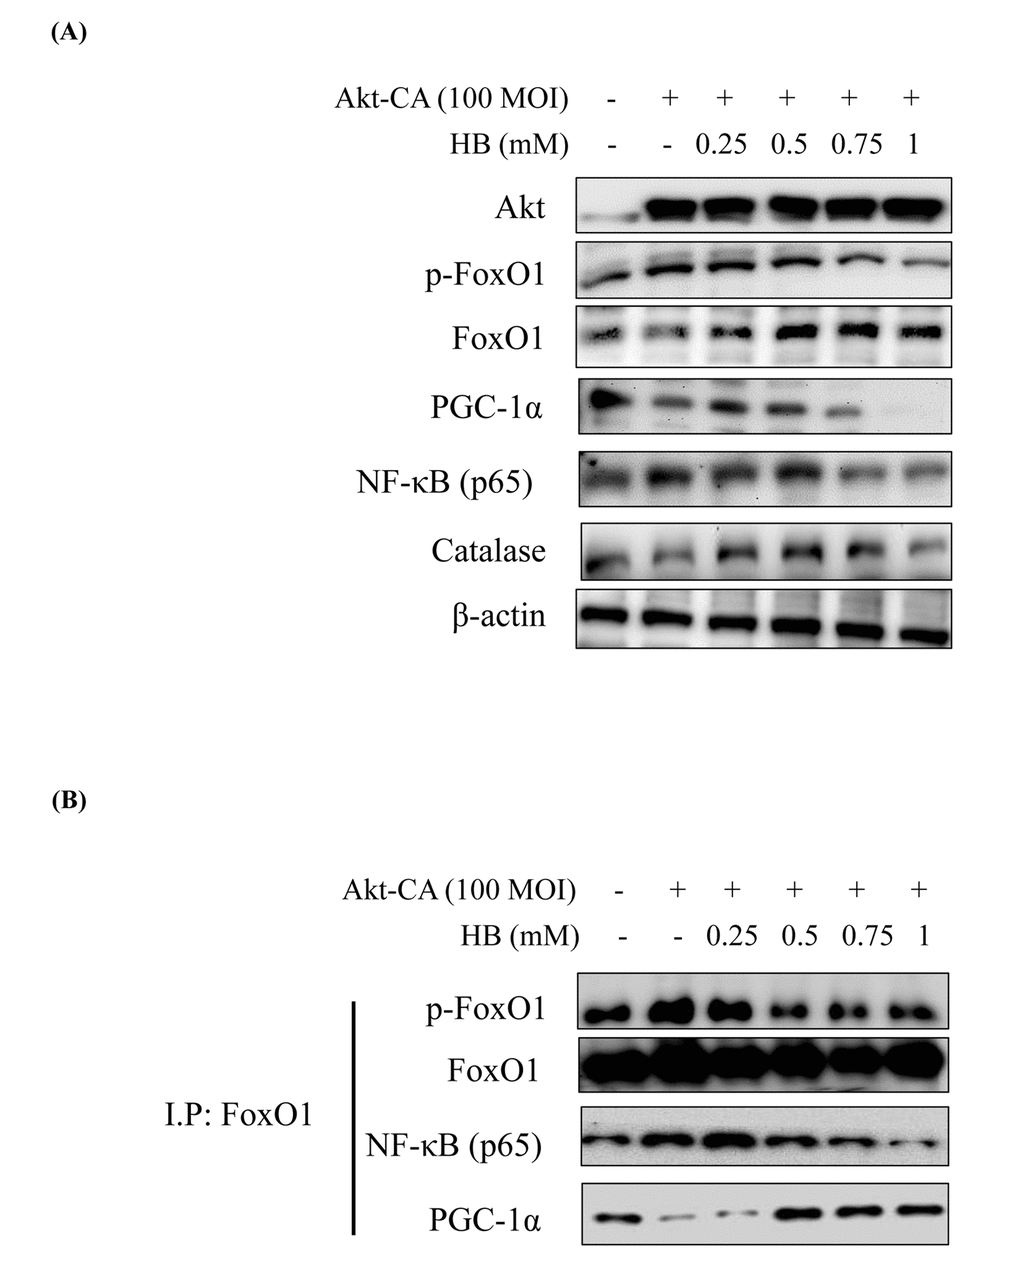 β-hydroxybutyrate (HB) regulates the activation of FoxO1 phosphorylation through the PI3K/Akt pathway. HEK293T cells were grown to 80% confluency in 100 mm dishes in DMEM medium, pre-treated (1 day) with or without CA-Akt (100 MOI), and then treated with 0.25–1 mM HB. (A) Cells were pre-transduced in the absence or presence of CA-Akt vector (100 MOI), and analyzed by western blotting. (B) Immunoprecipitation showed that FoxO1 was physically associated with phosphorylated FoxO1, FoxO1, p65, and PGC-1α after stimulation with HB (0.25–1 mM) in the absence or presence of CA-Akt (100 MOI).